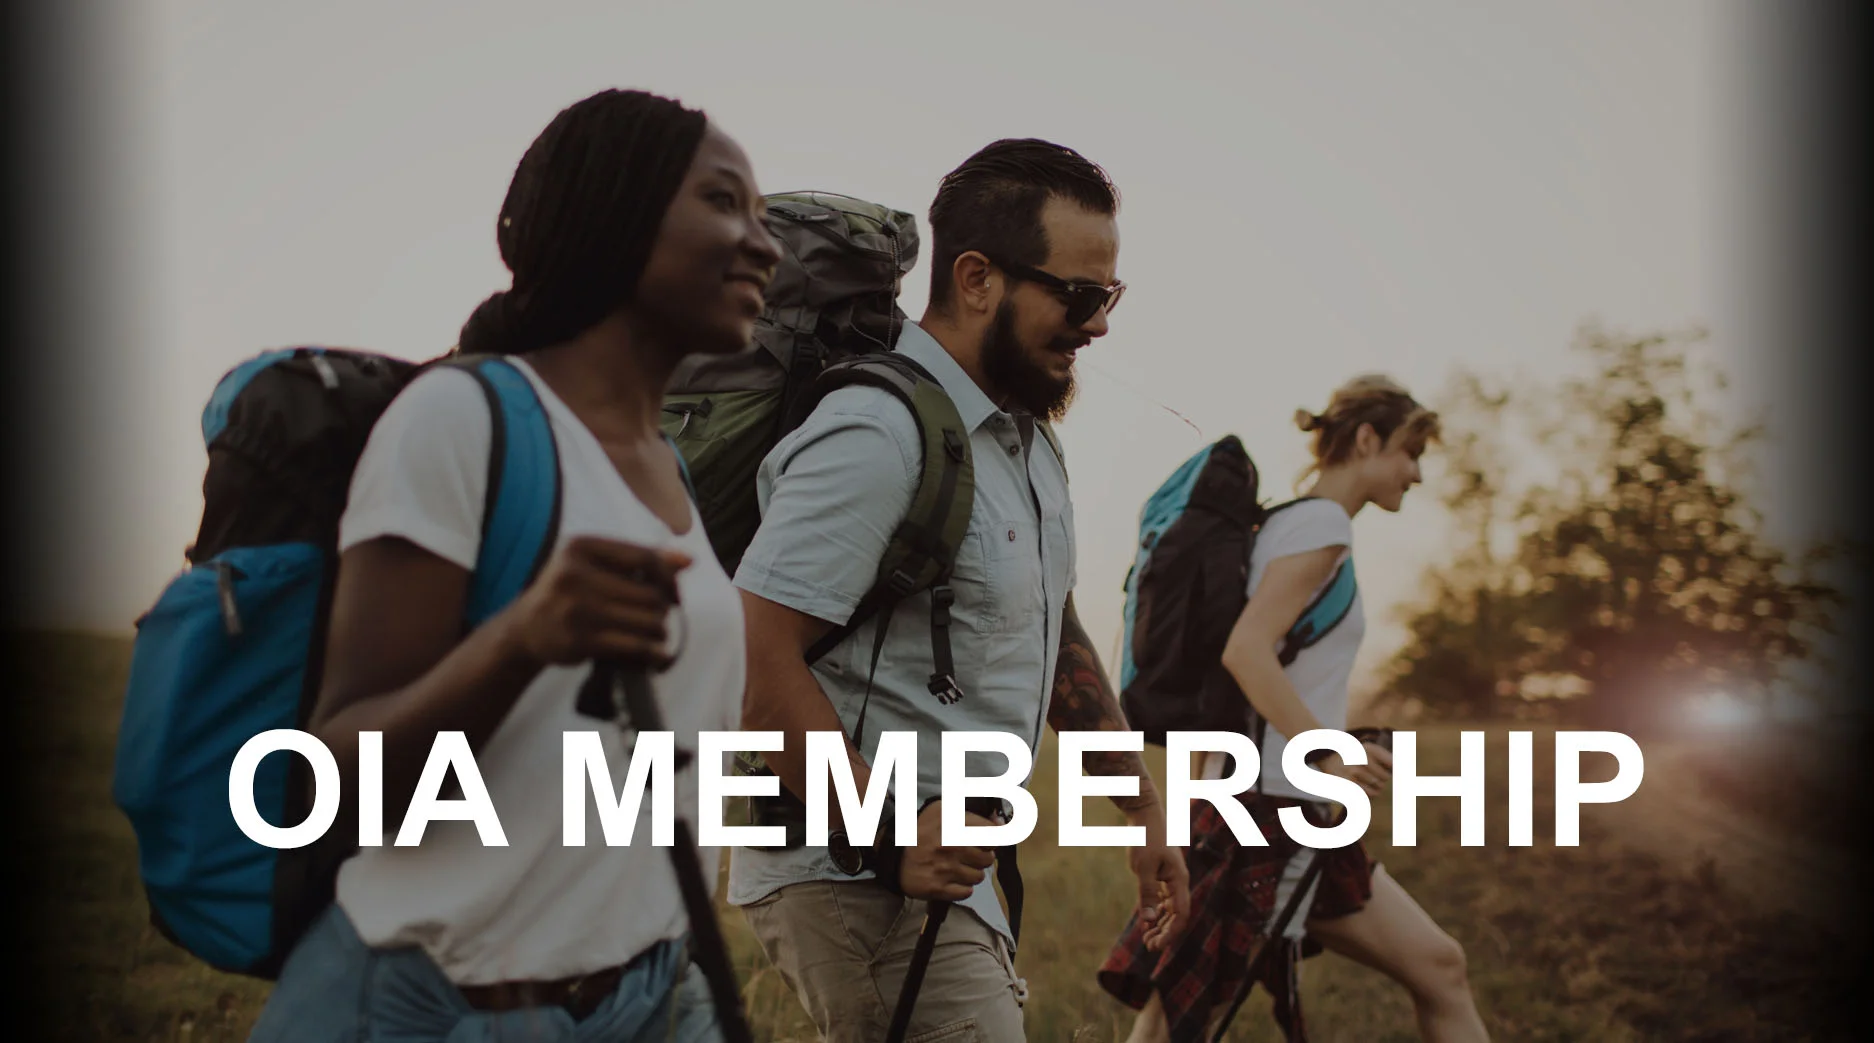 OIA Membership Video